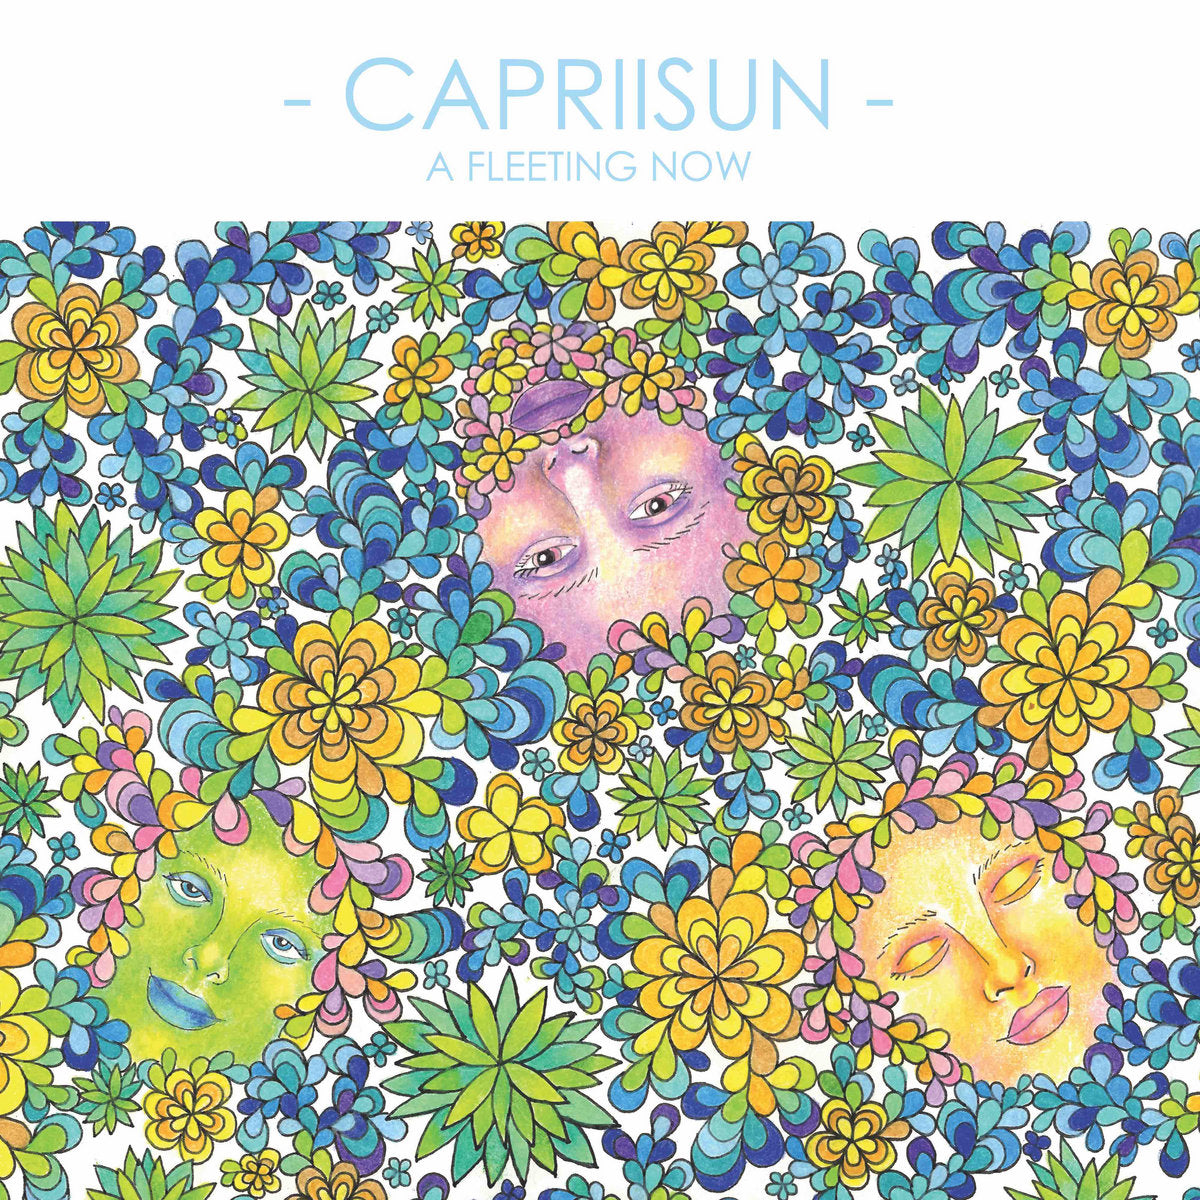 Capriisun - A Fleeting Now